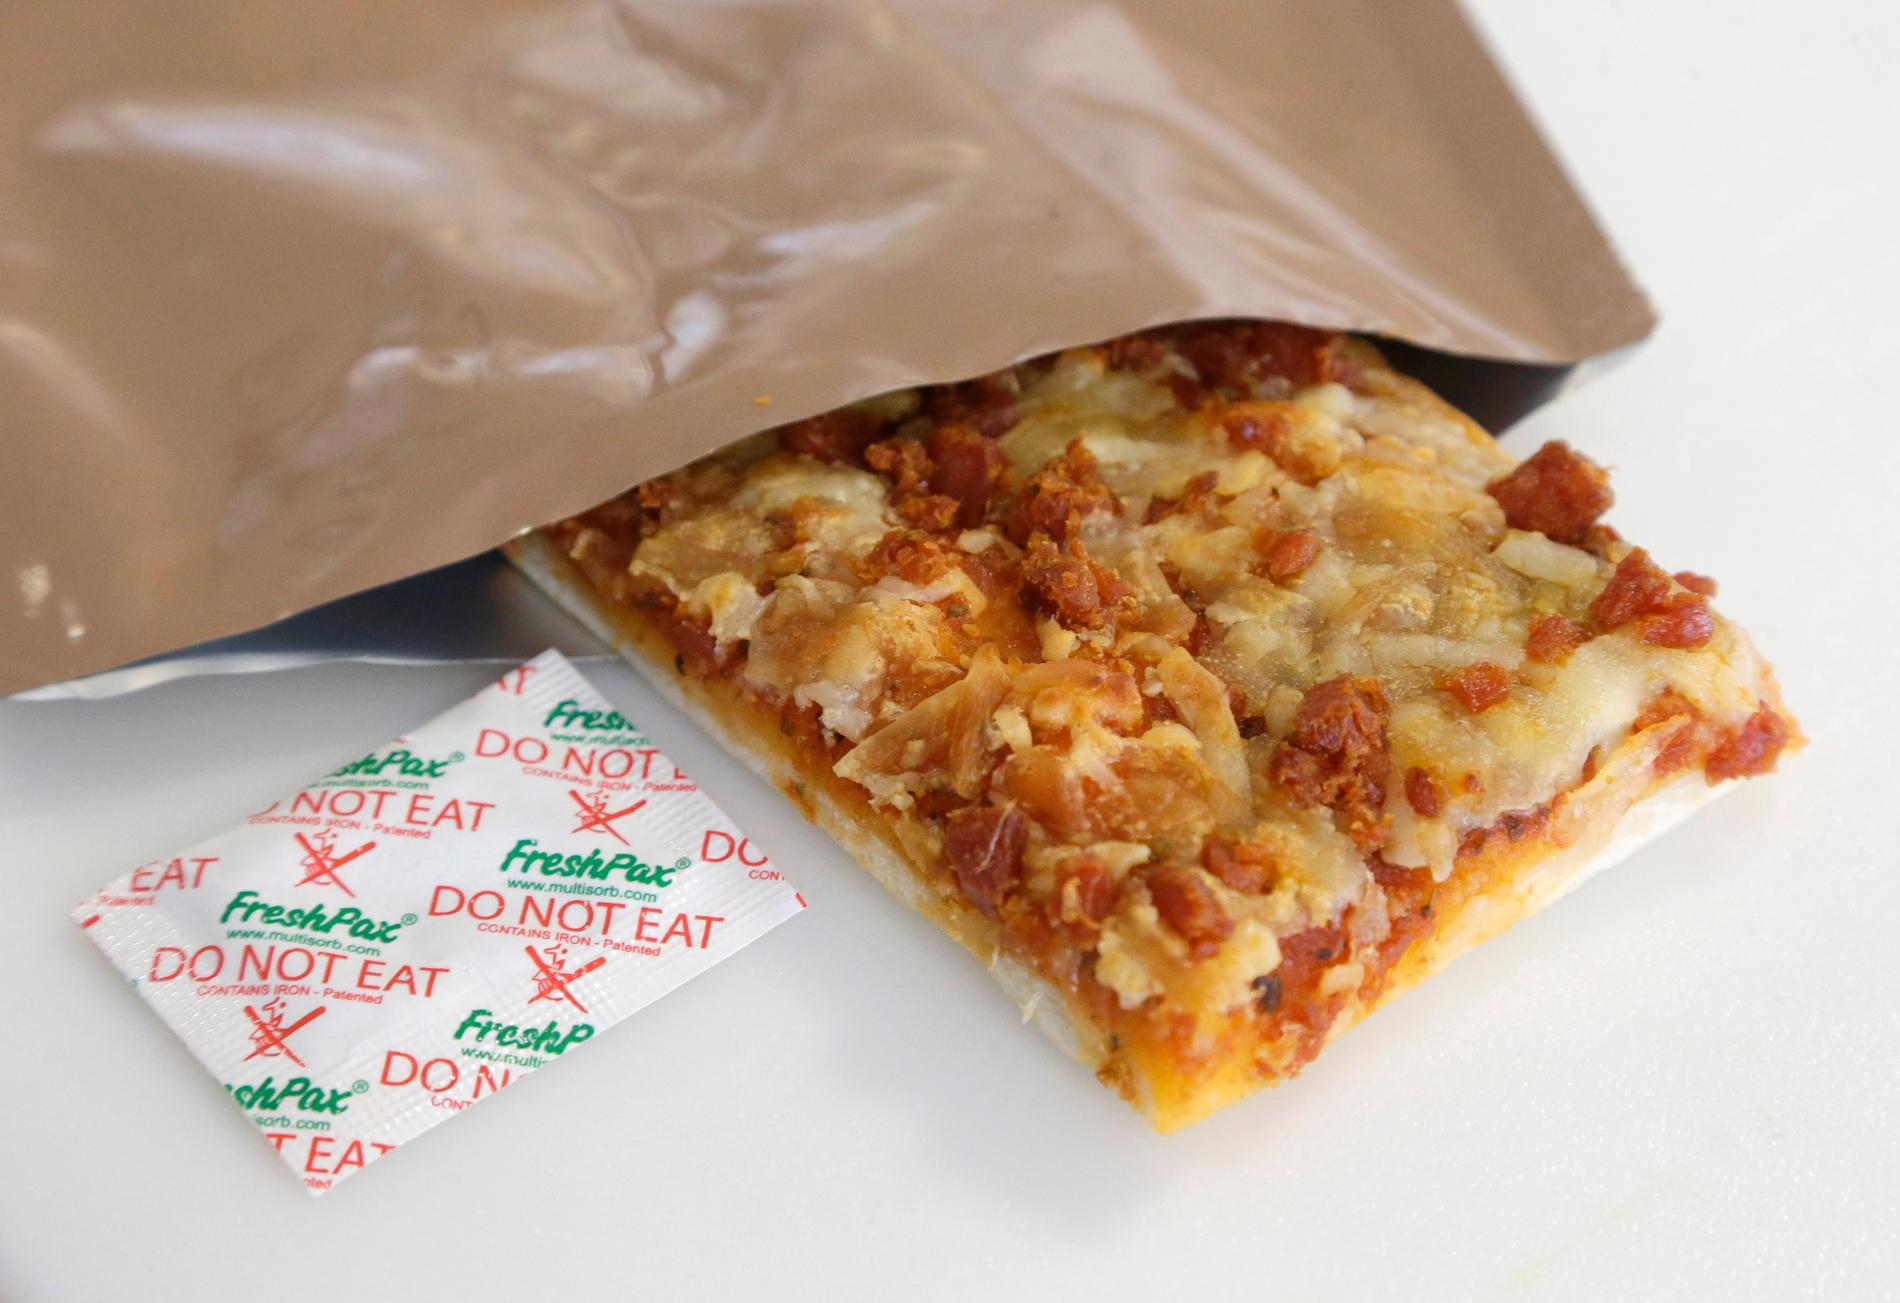 Här är en prototyp till pizzan som snart kommer att inkluderas i sortimentet av fältransoner, kända som "Meals Ready to Eat" (MRE) i den amerikanska armén.